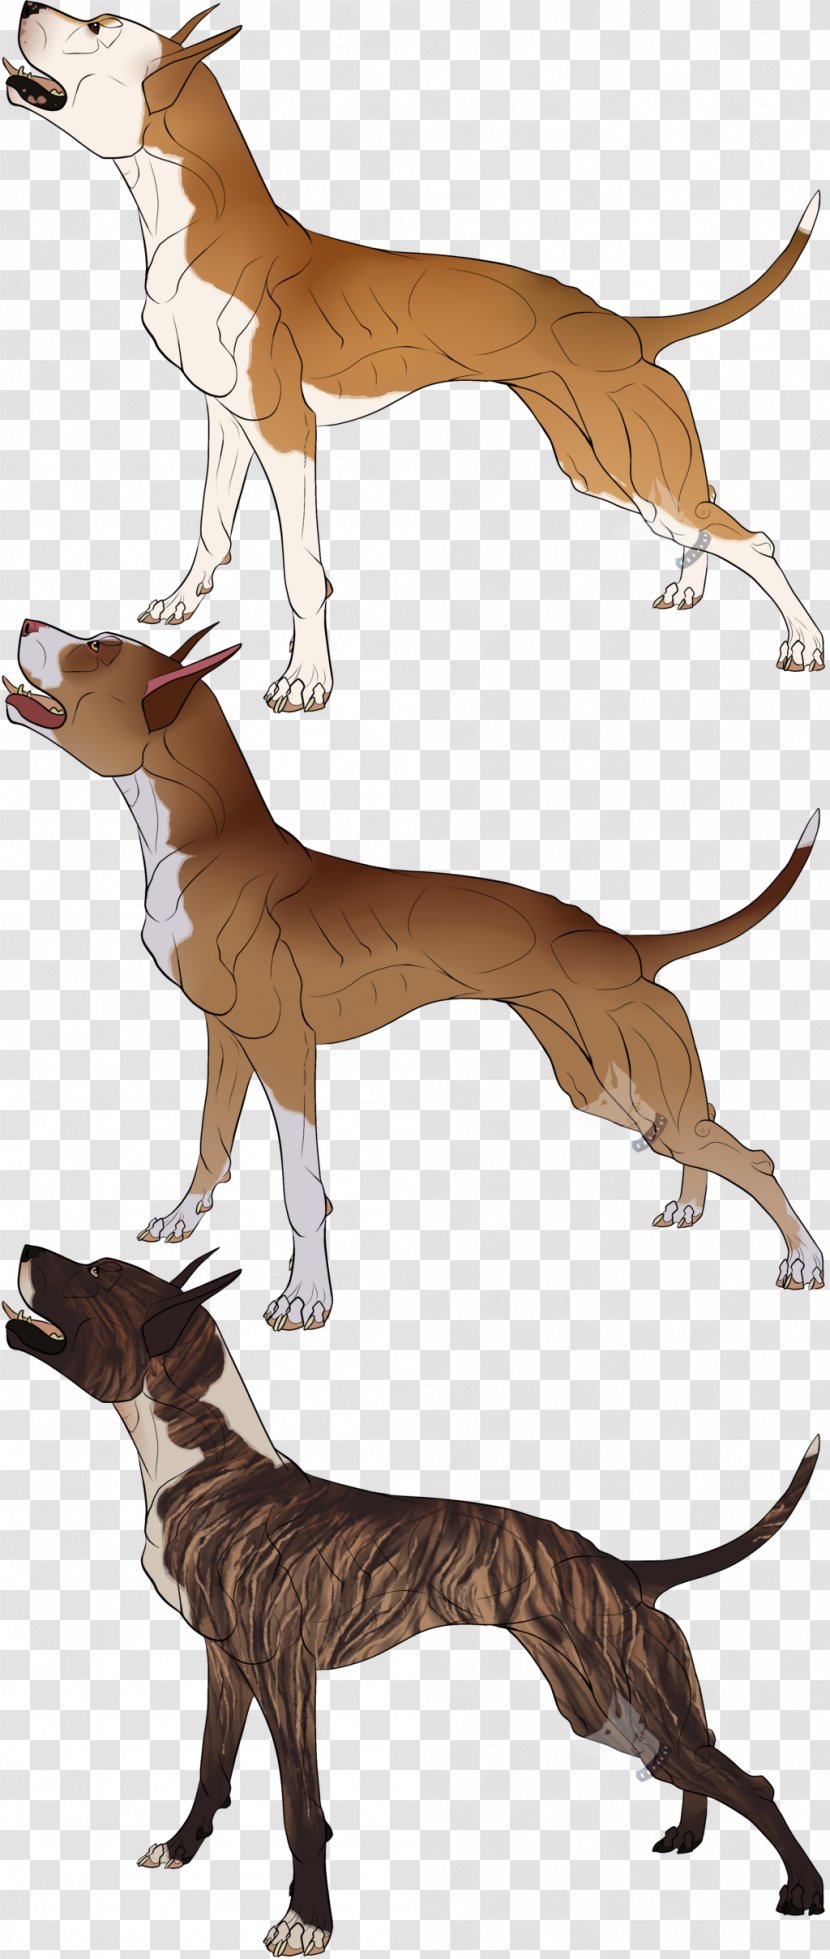 Italian Greyhound Cartoon Character - Fictional - Cane Corso Transparent PNG